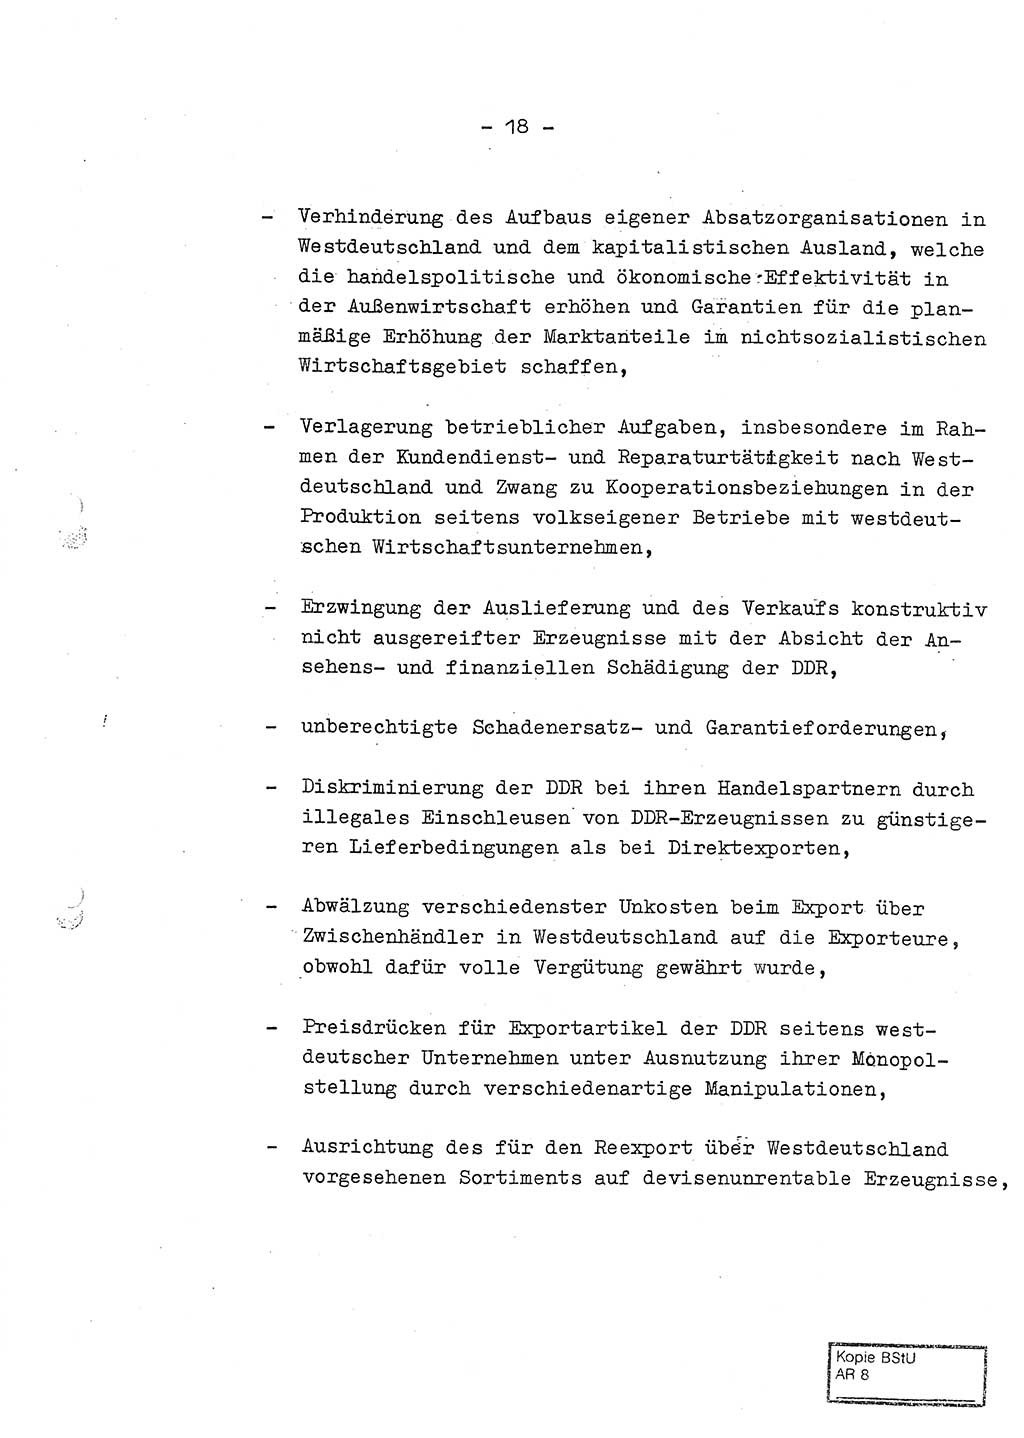 Jahresbericht der Hauptabteilung (HA) Ⅸ 1969 des Ministeriums für Staatssicherheit (MfS) der Deutschen Demokratischen Republik (DDR), Berlin 1970, Seite 18 (J.-Ber. MfS DDR HA Ⅸ /69 1970, S. 18)